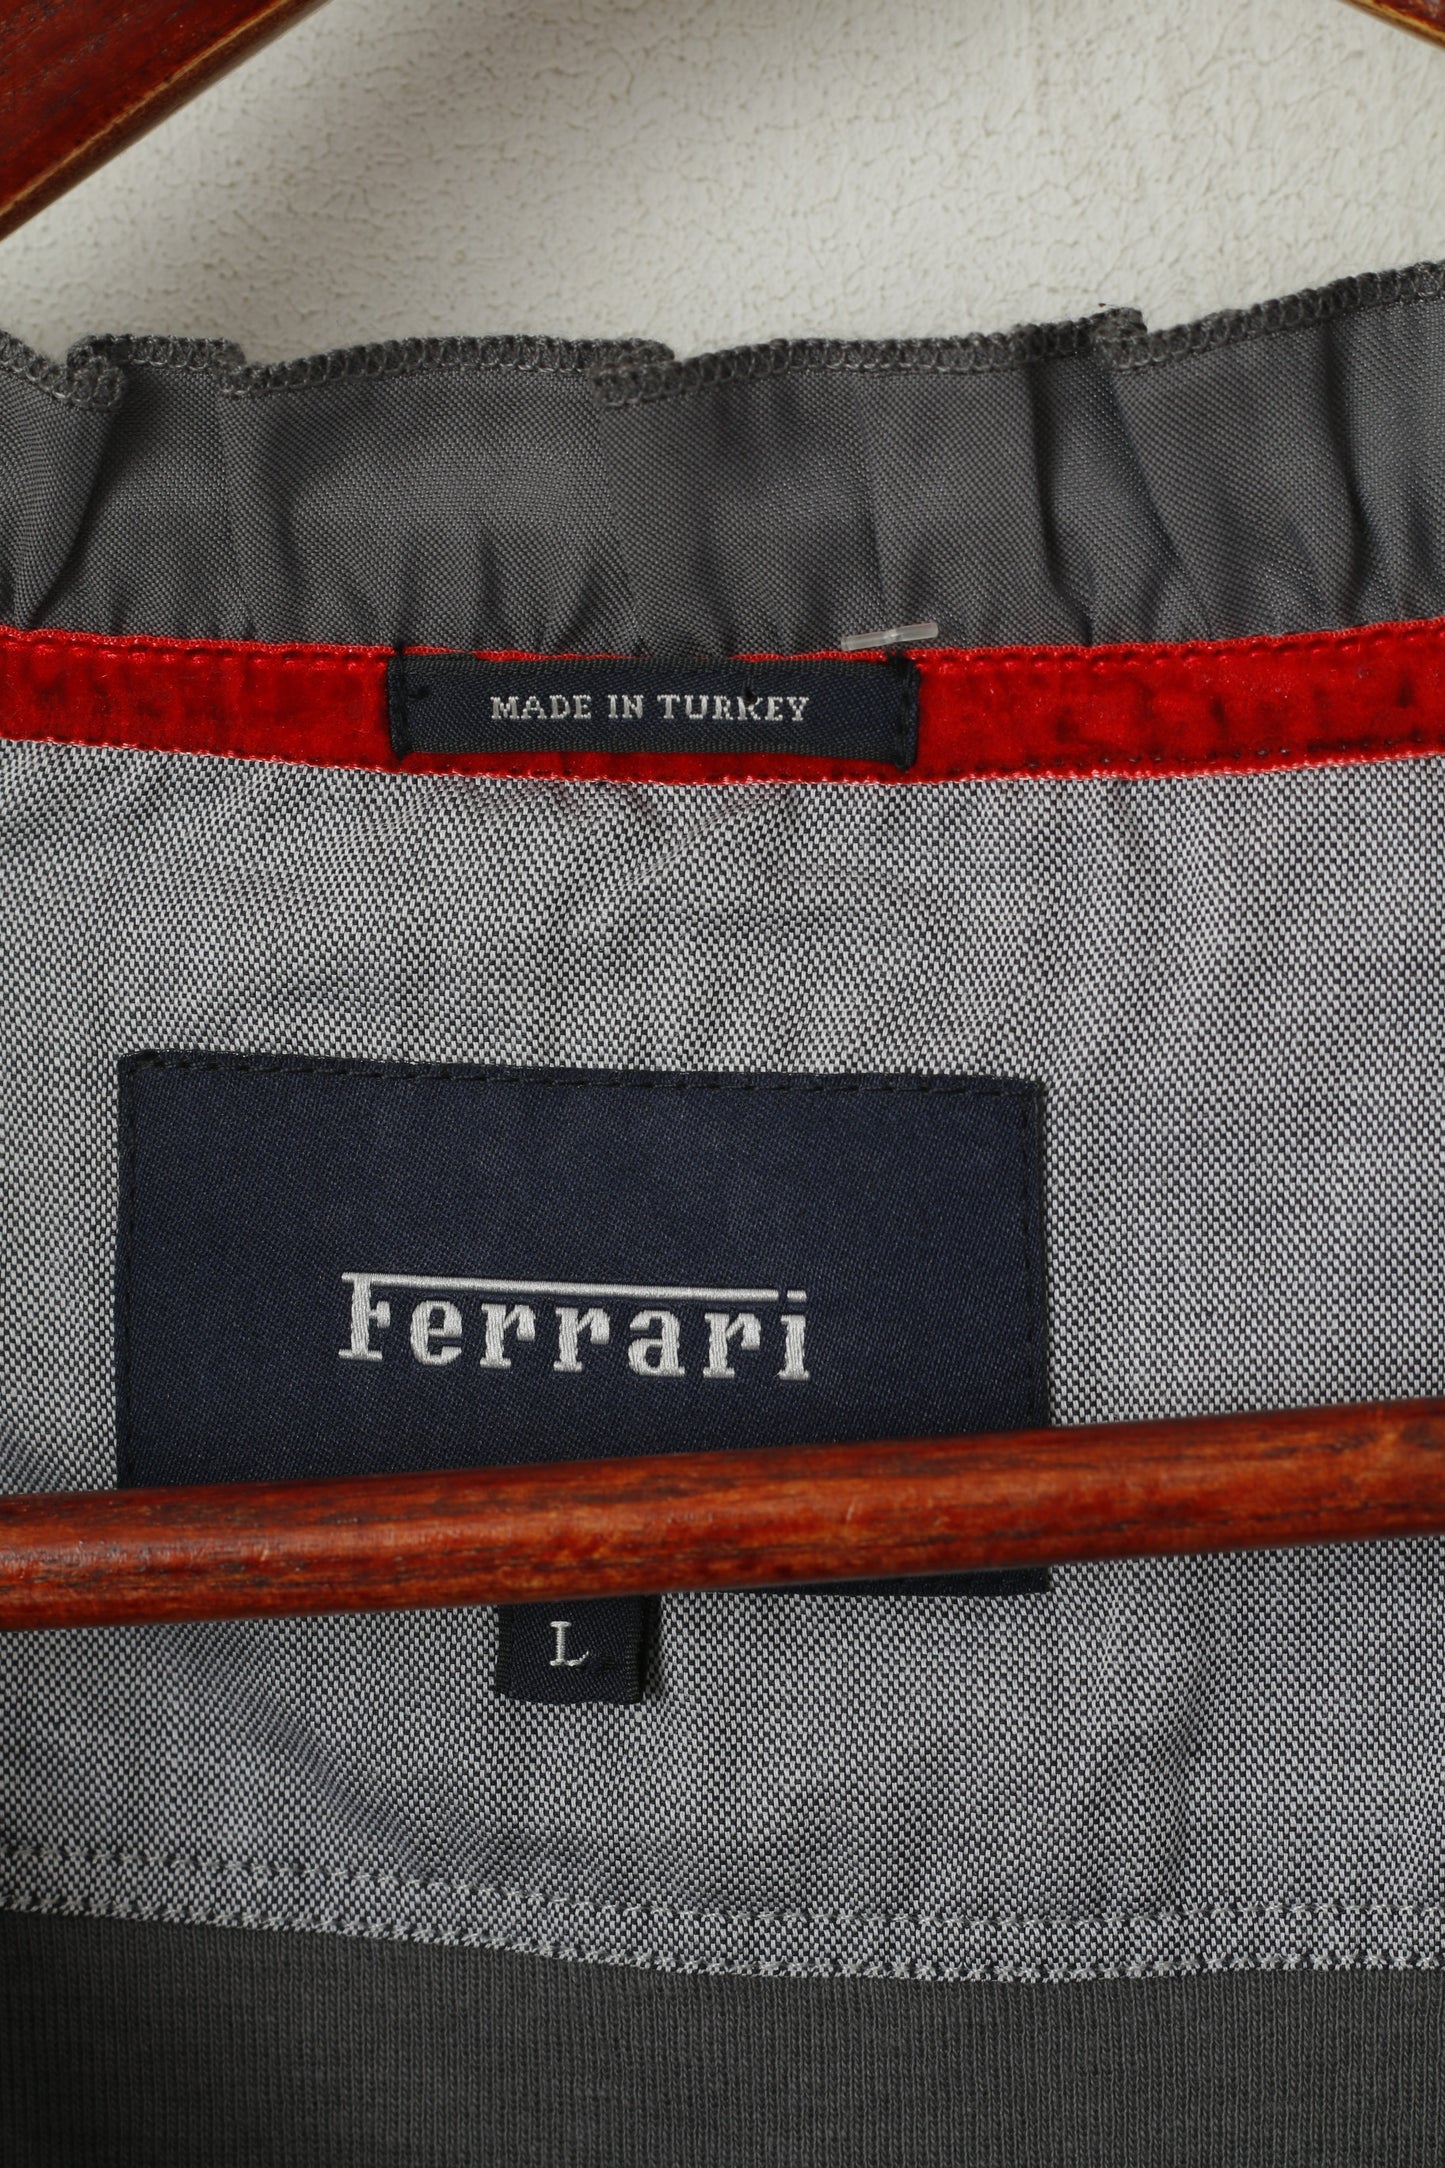 Camicia Ferrari da donna L. Girocollo grigio con volant in cotone, logo classico, tinta unita